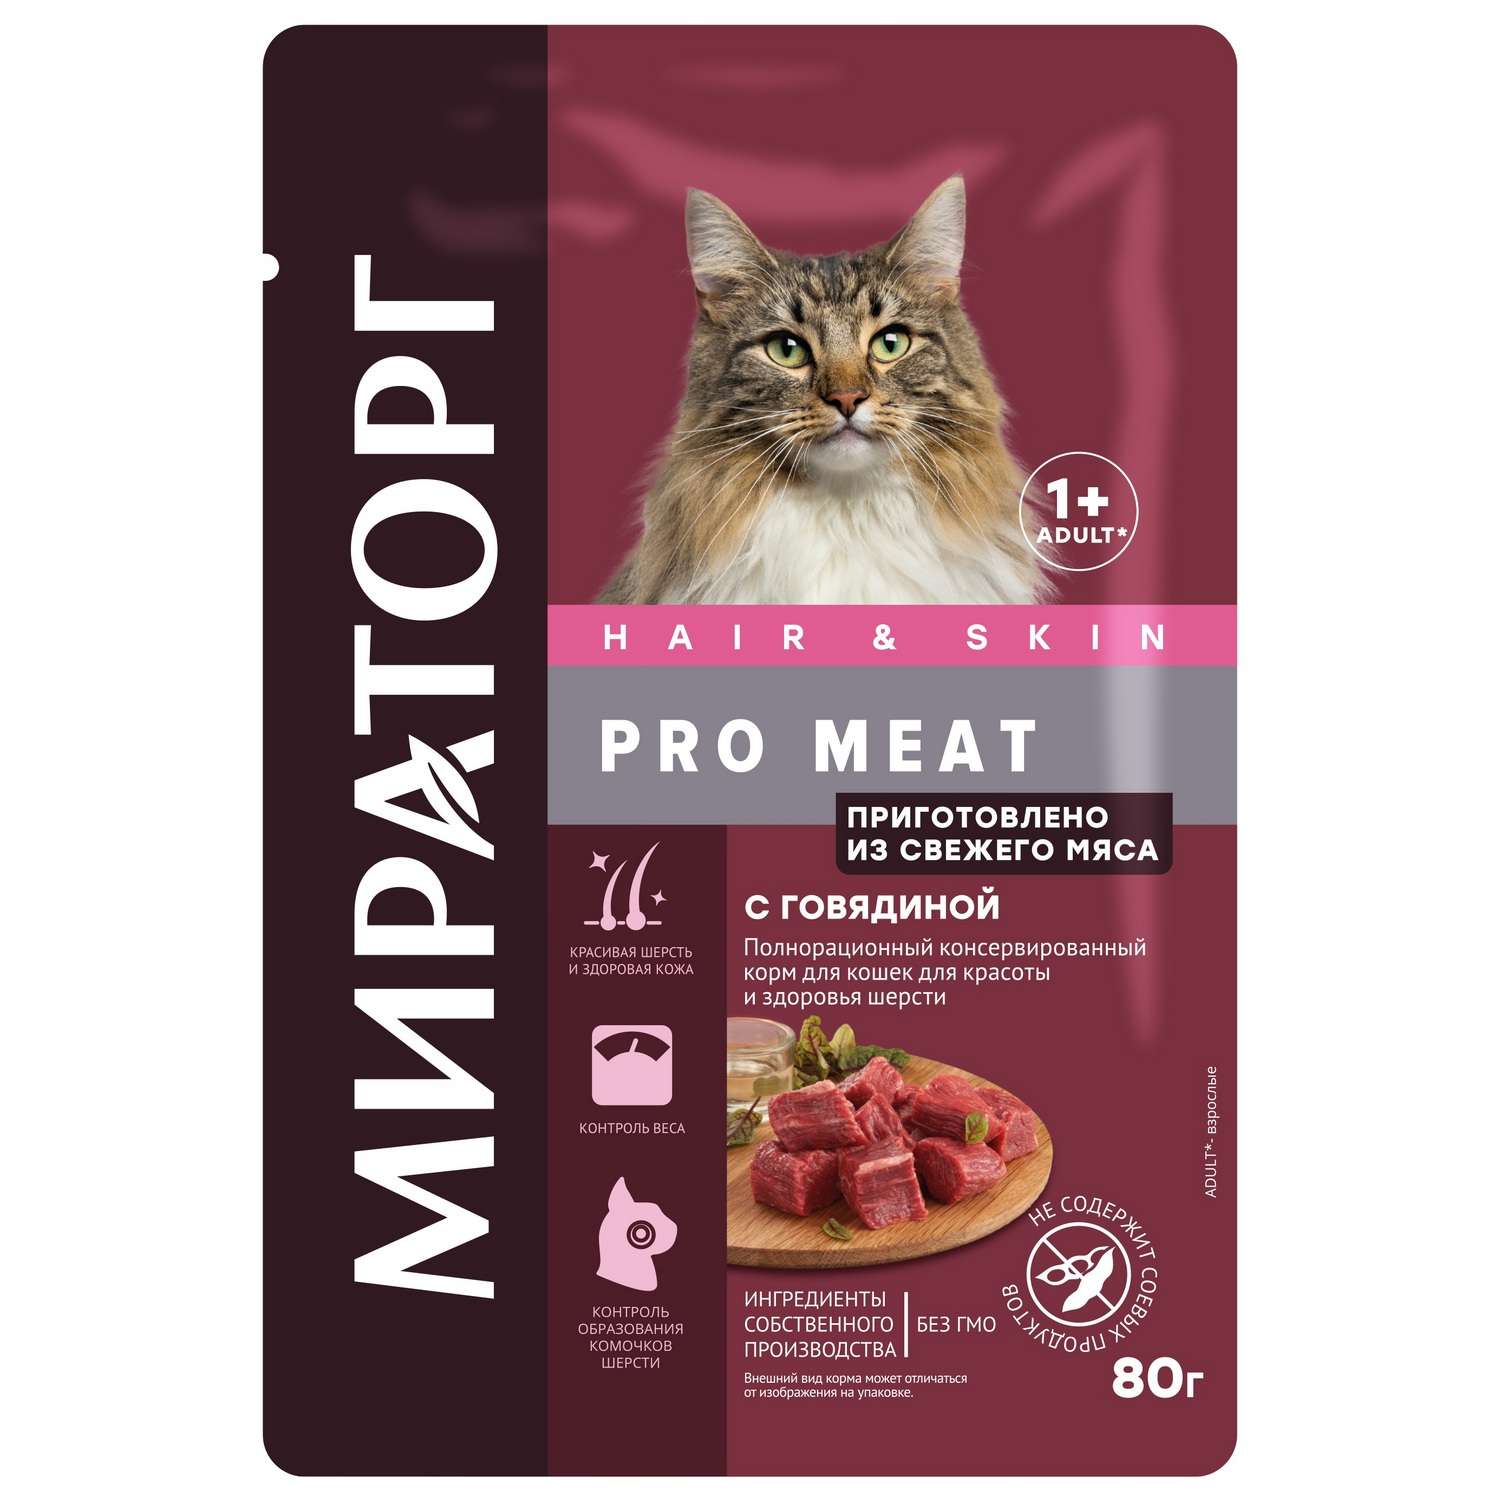 Корм консервированный WINNER Pro Meat полнорационный с говядиной для кошек для красоты и здоровья шерсти 80 г - фото 1